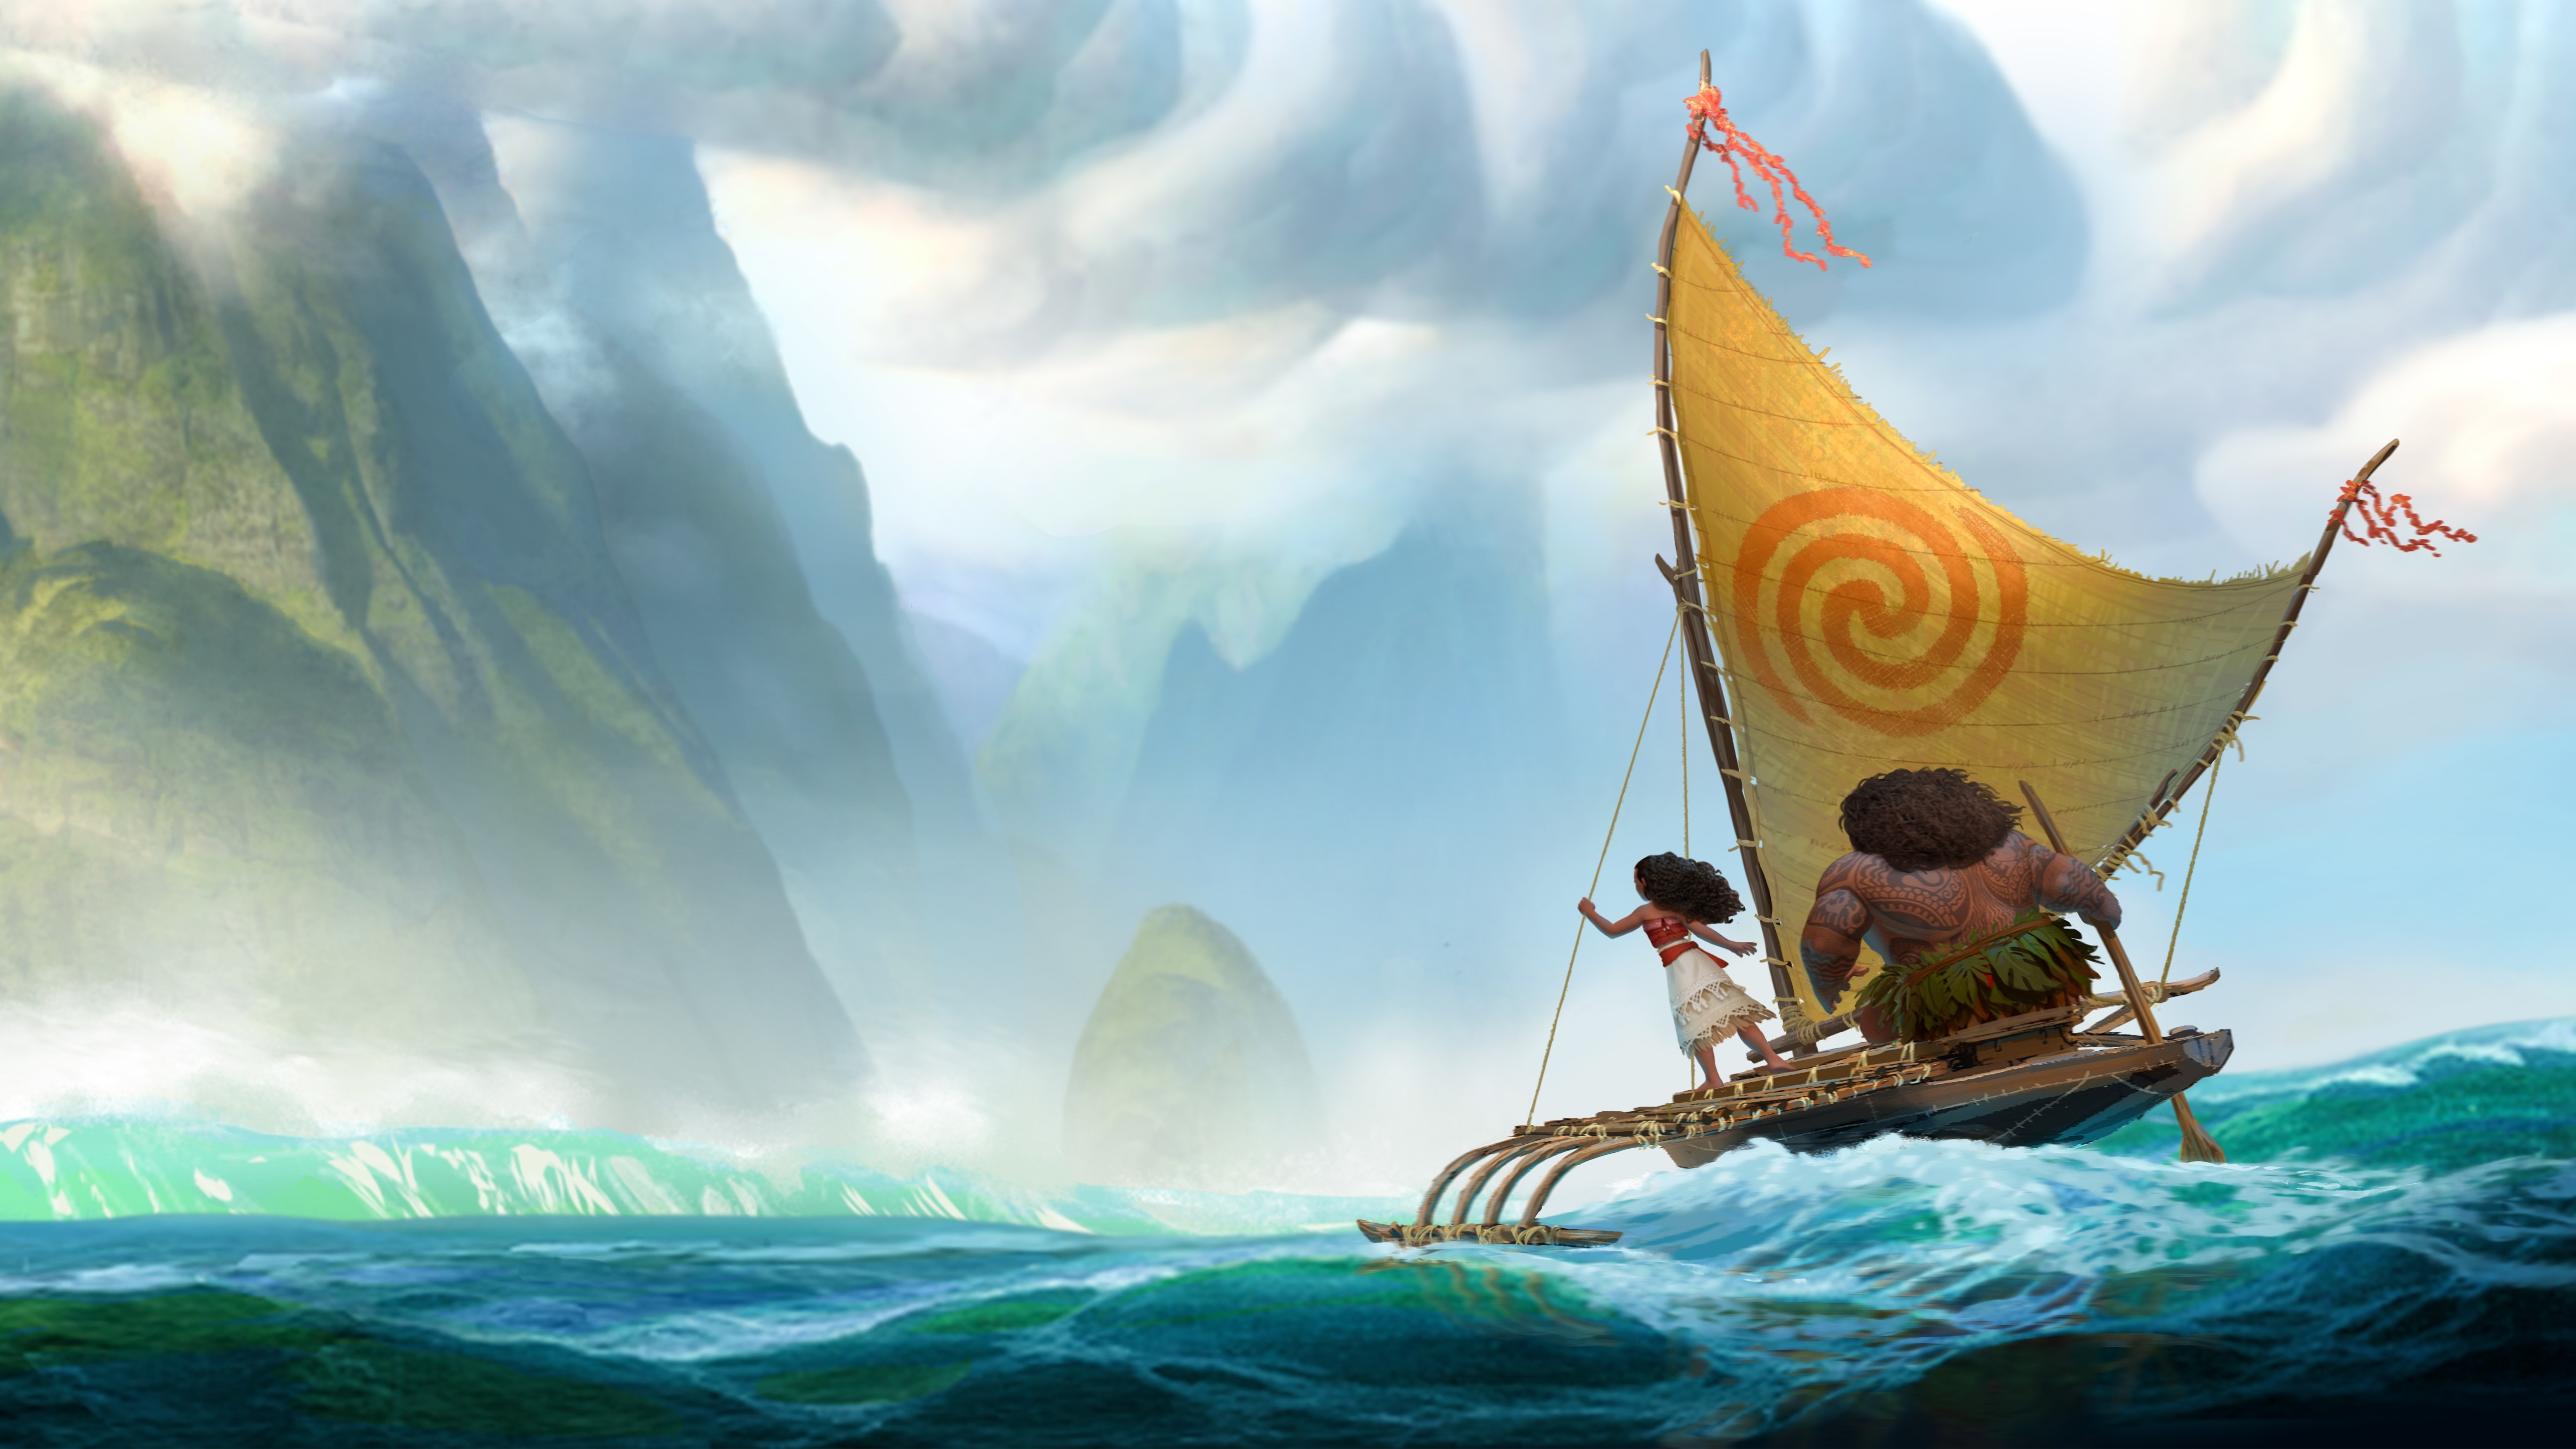 fond d'écran de film d'animation,bateau,navires vikings,véhicule,voile,motomarine